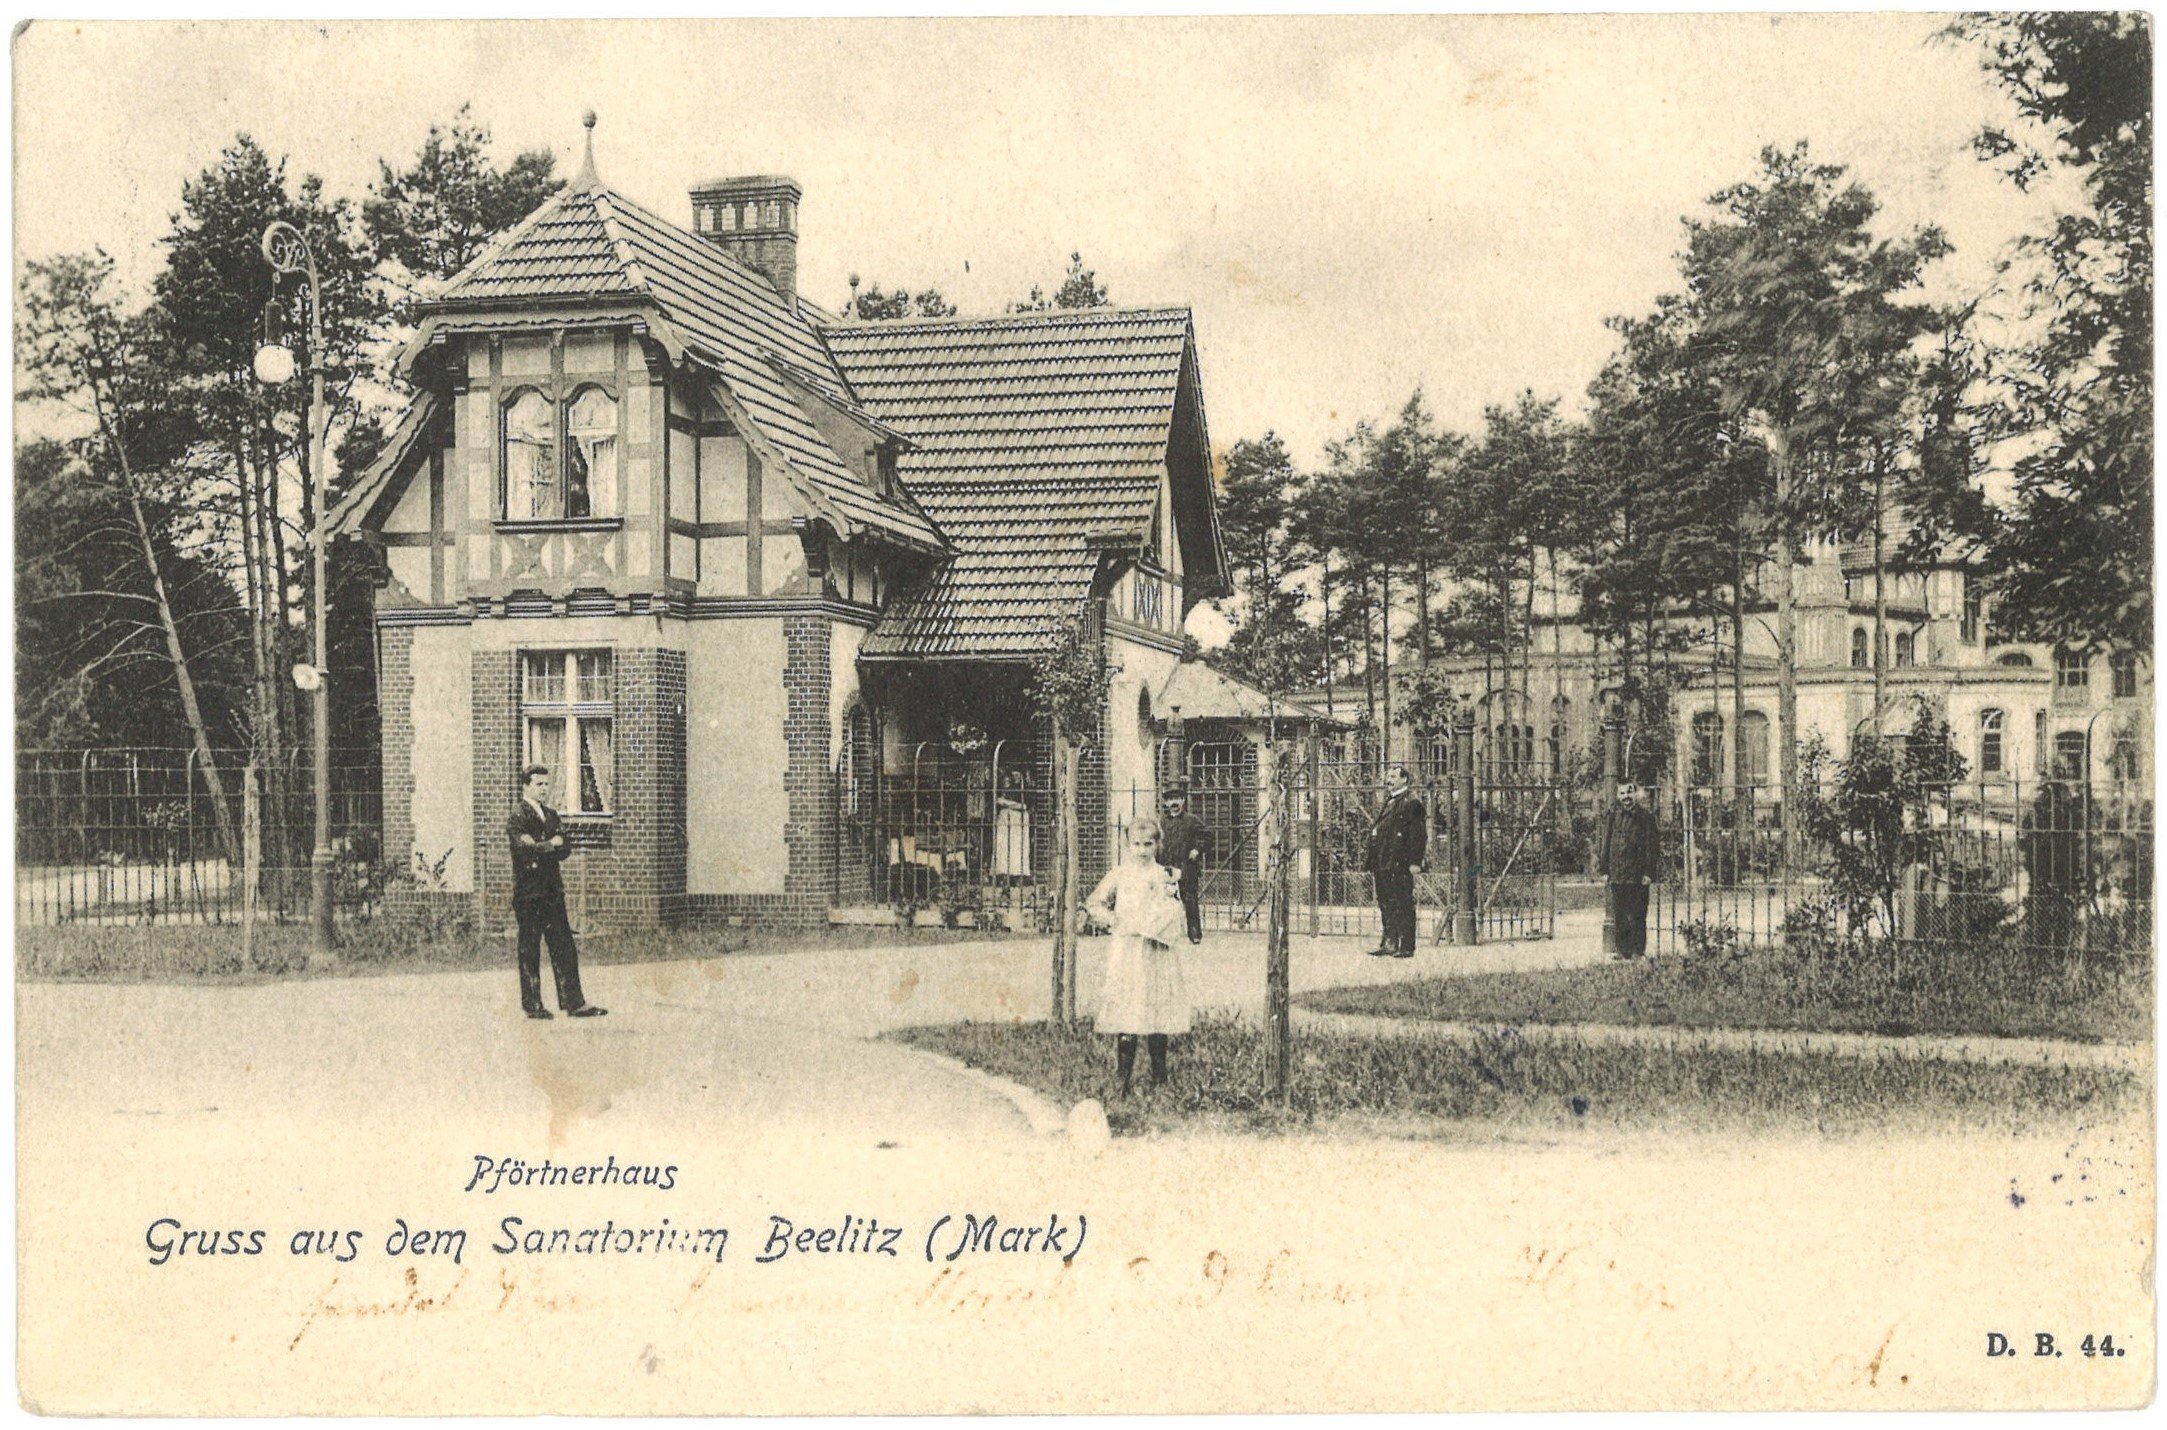 Beelitz-Heilstätten: Pförtnerhaus (Landesgeschichtliche Vereinigung für die Mark Brandenburg e.V. CC BY)